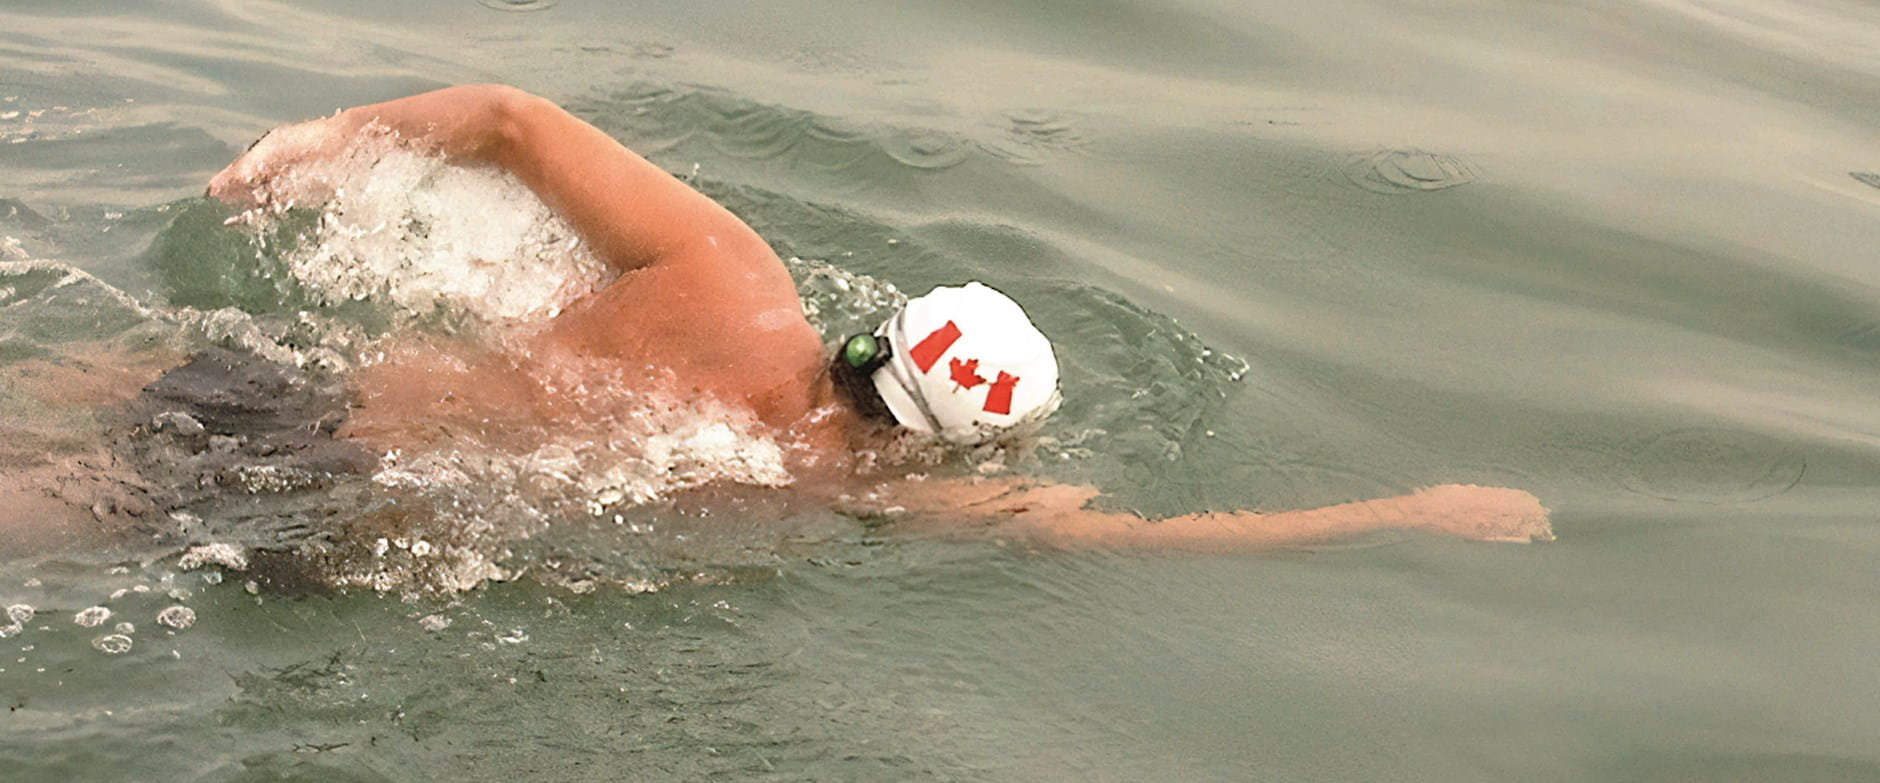 Jordan Waxman swimming in open water